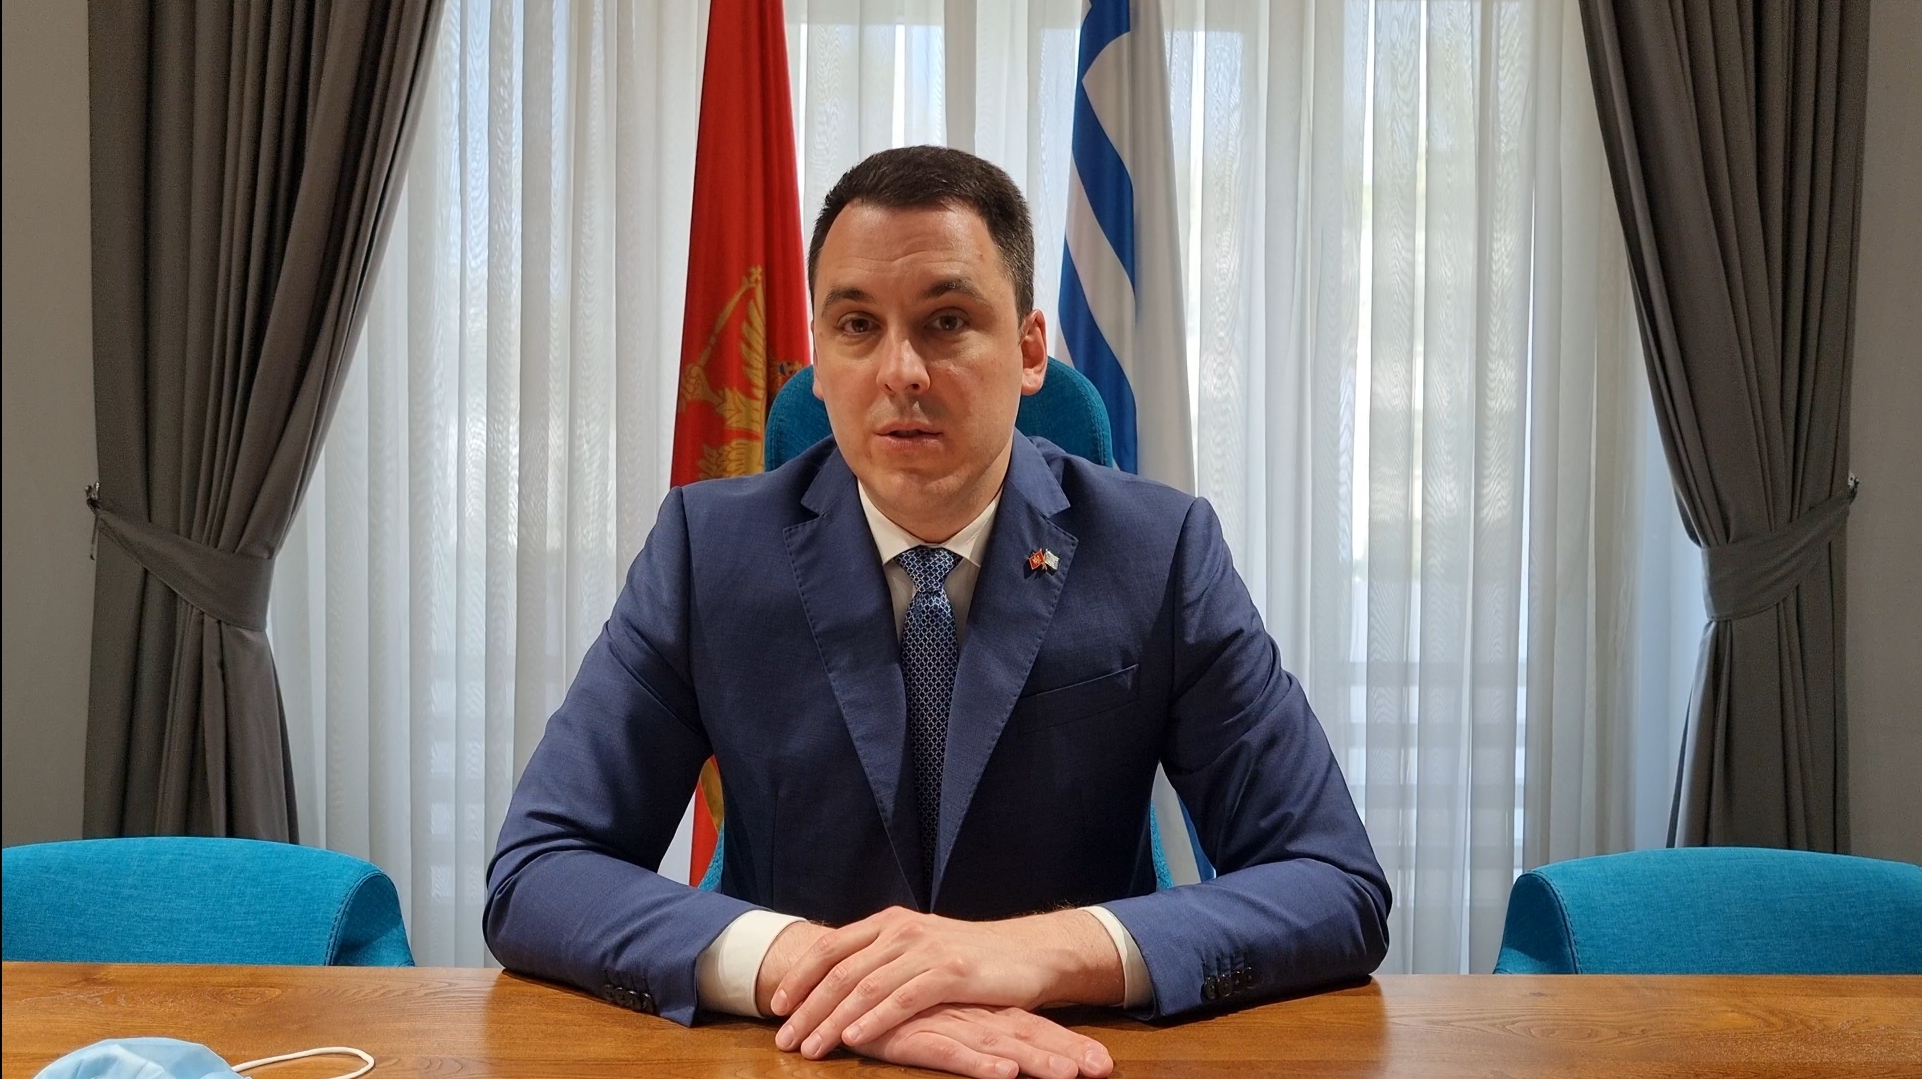 Međunarodni praznik rada: Vuković najavio povećanje plata službenicima Glavnog grada koji imaju najmanja primanja